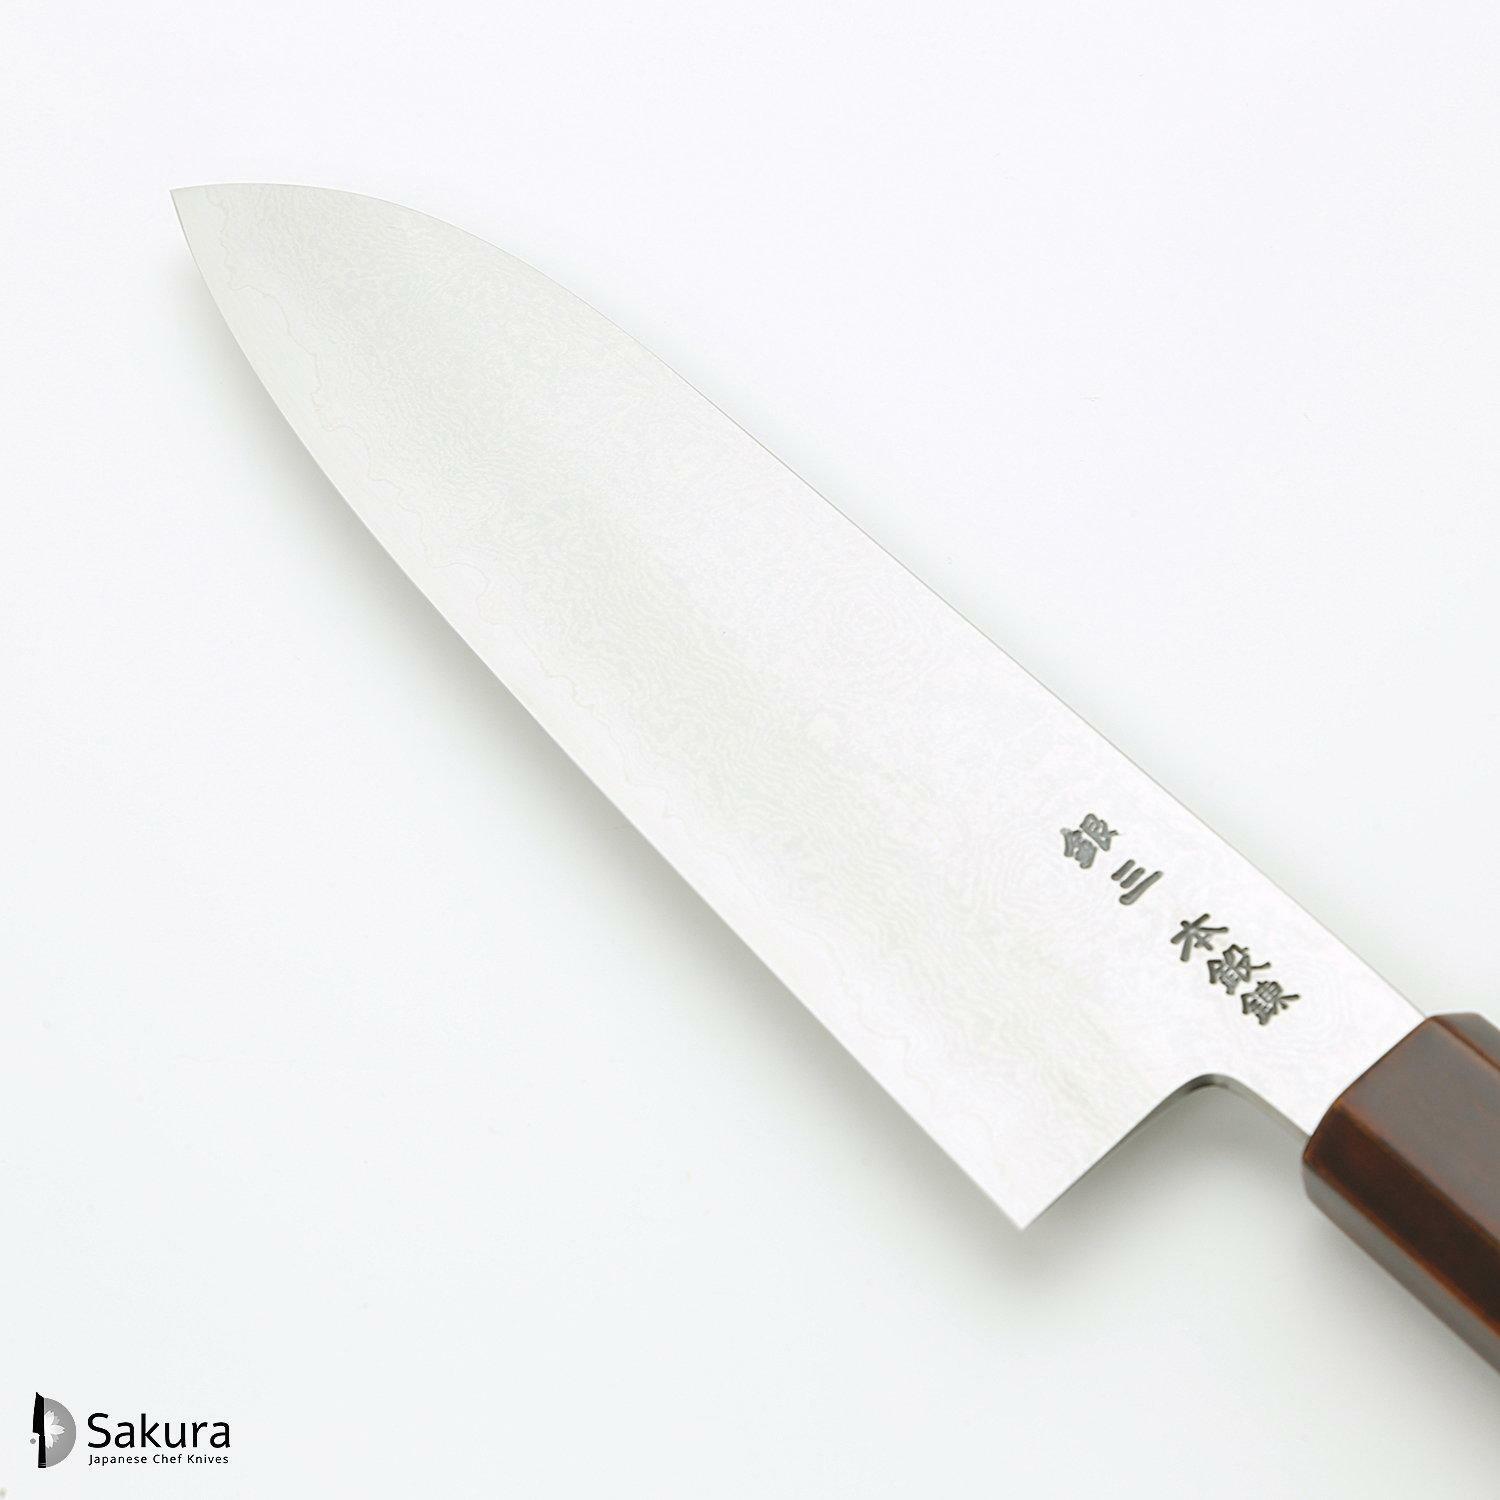 סכין רב-תכליתית סָנטוֹקוּ 180מ״מ מחושלת בעבודת יד 3 שכבות: פלדת פחמן יפנית מתקדמת מסוג Ginsan Silver#3 עטופה פלדת אל-חלד בגימור דמשק גימור דמשק האדו יפן